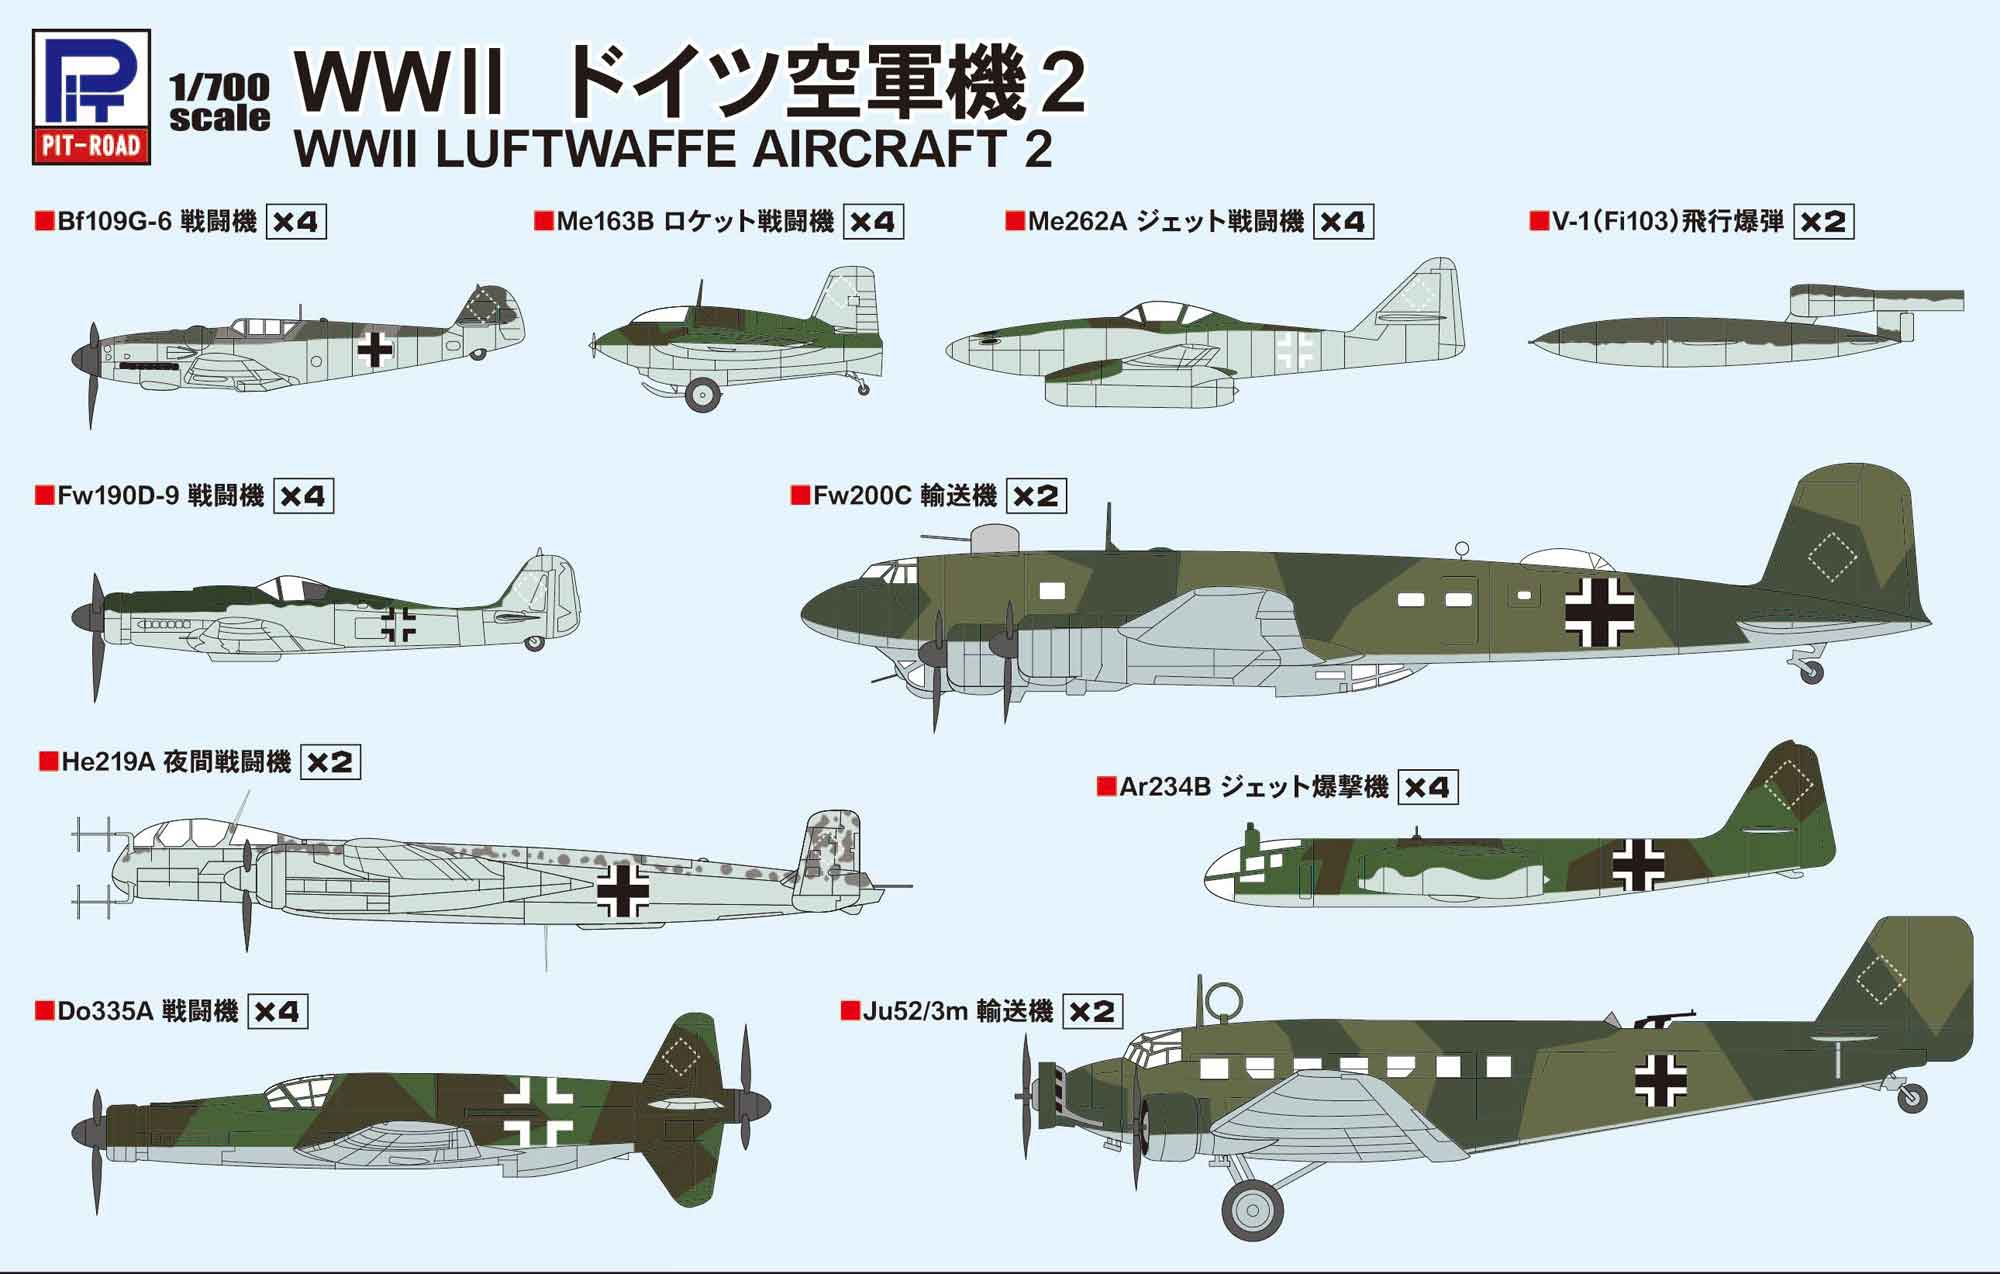 1/700 WWII ドイツ空軍機2 - ウインドウを閉じる